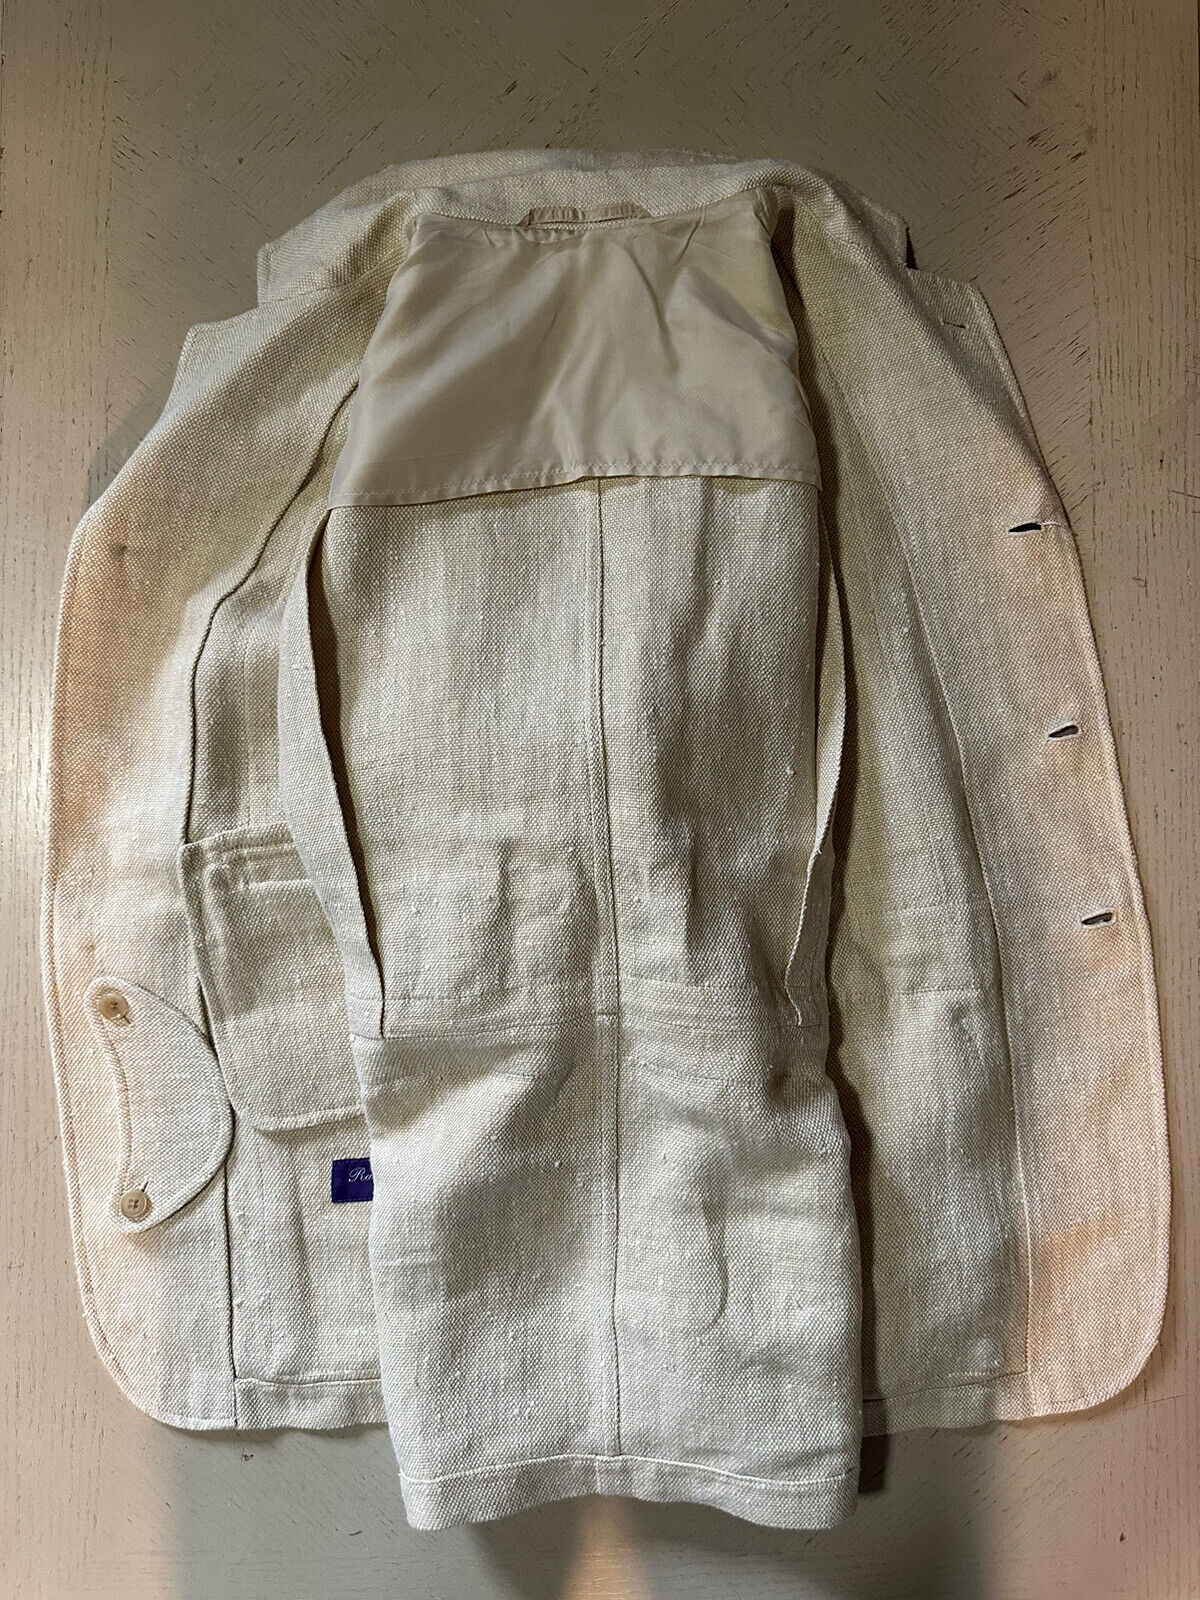 NWT $2895 Ralph Lauren Purple Label Мужской льняной пиджак Тон/Кремовый 40R США